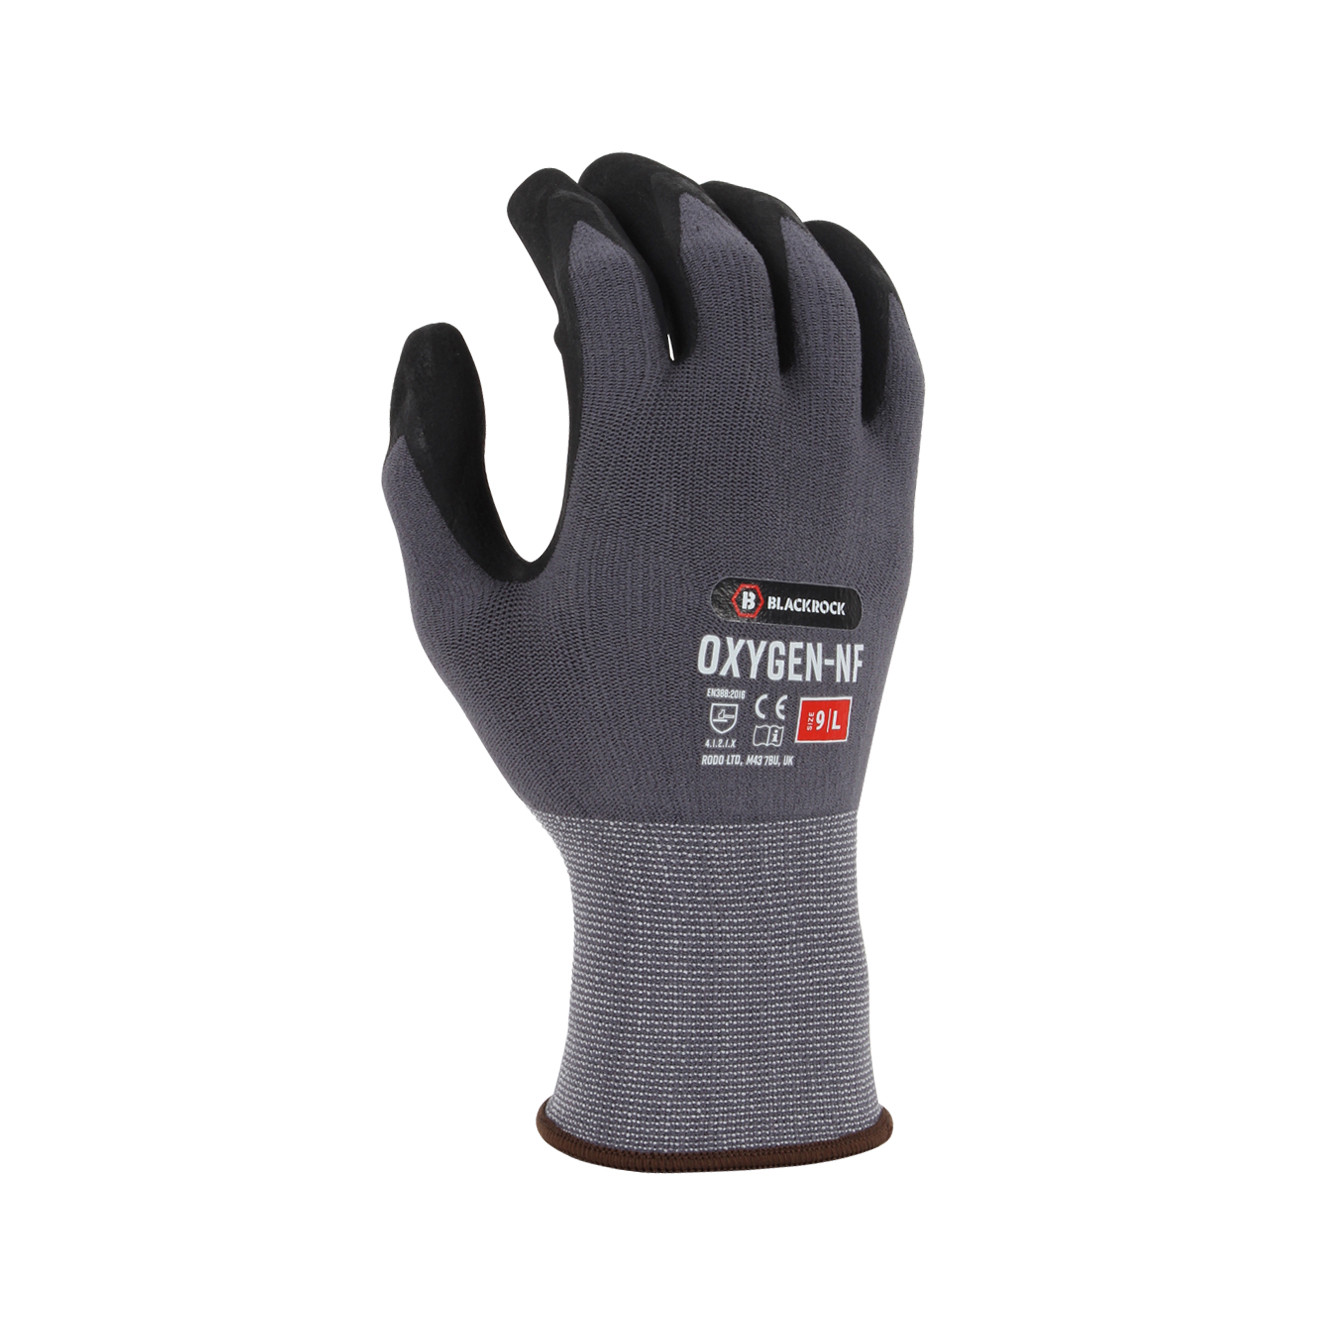 Oxygen-NF Work Glove